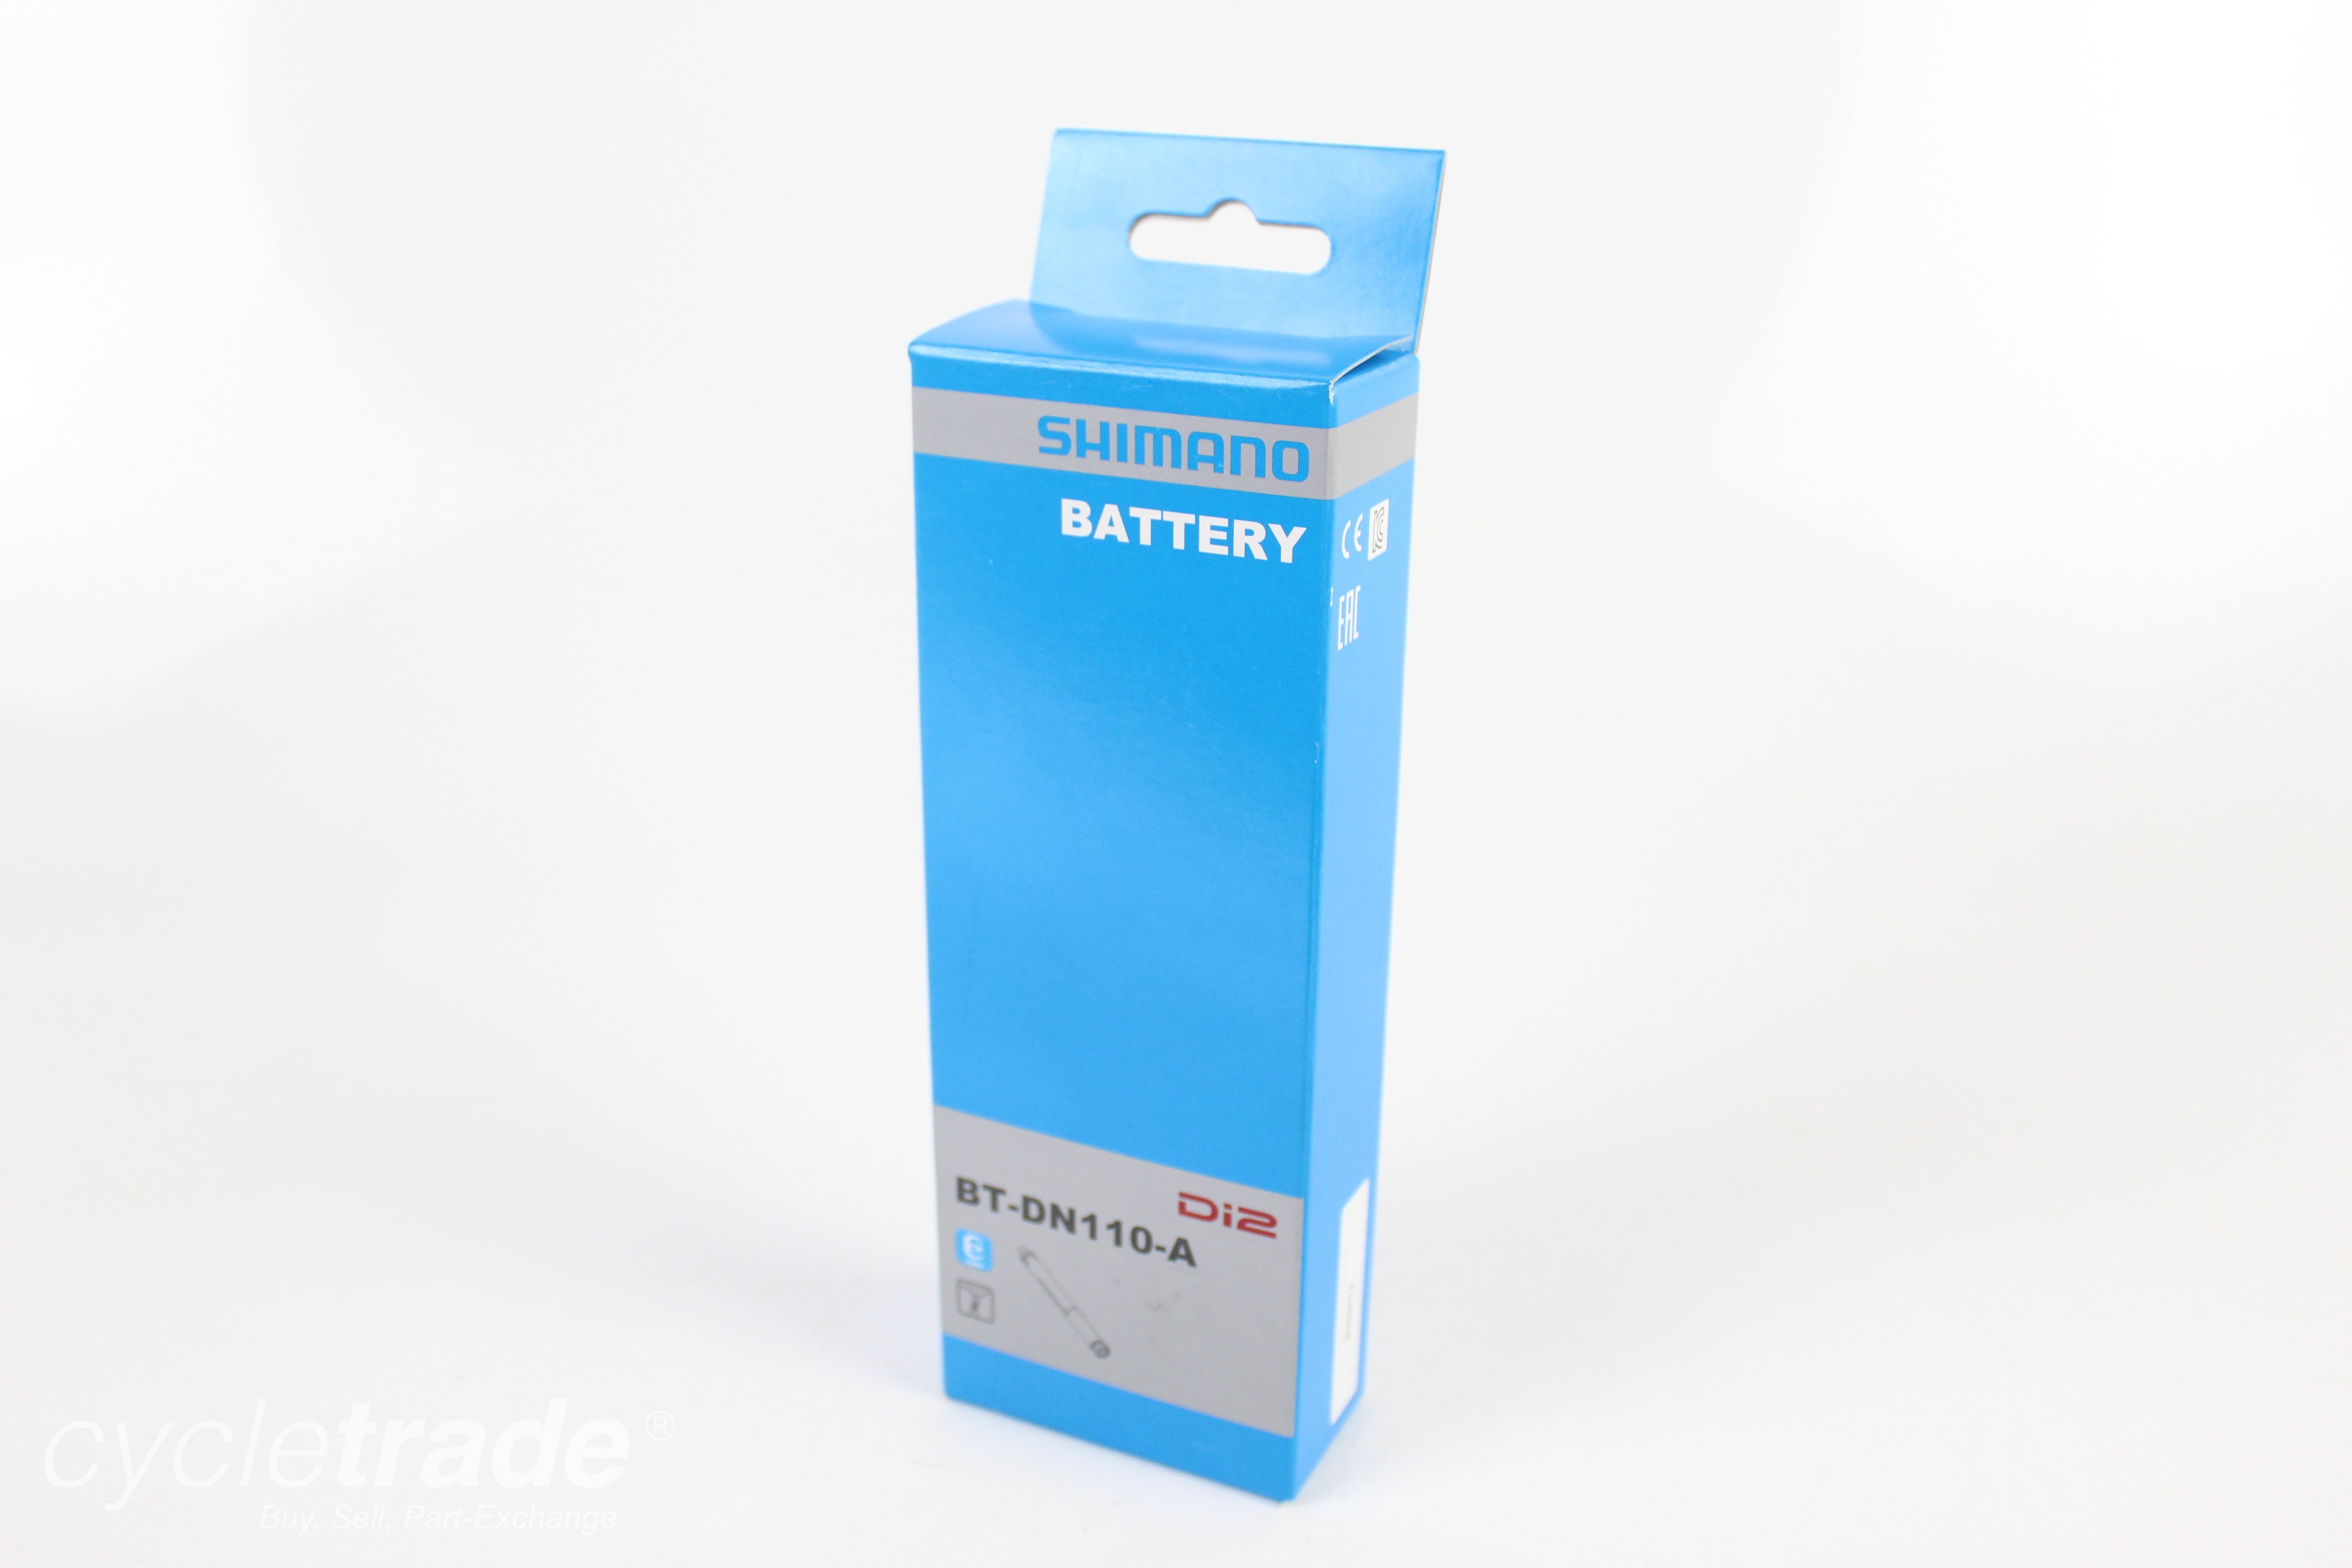 Di2 Battery- Shimano Di2 BT-DN110-A - Grade A+ New 0074